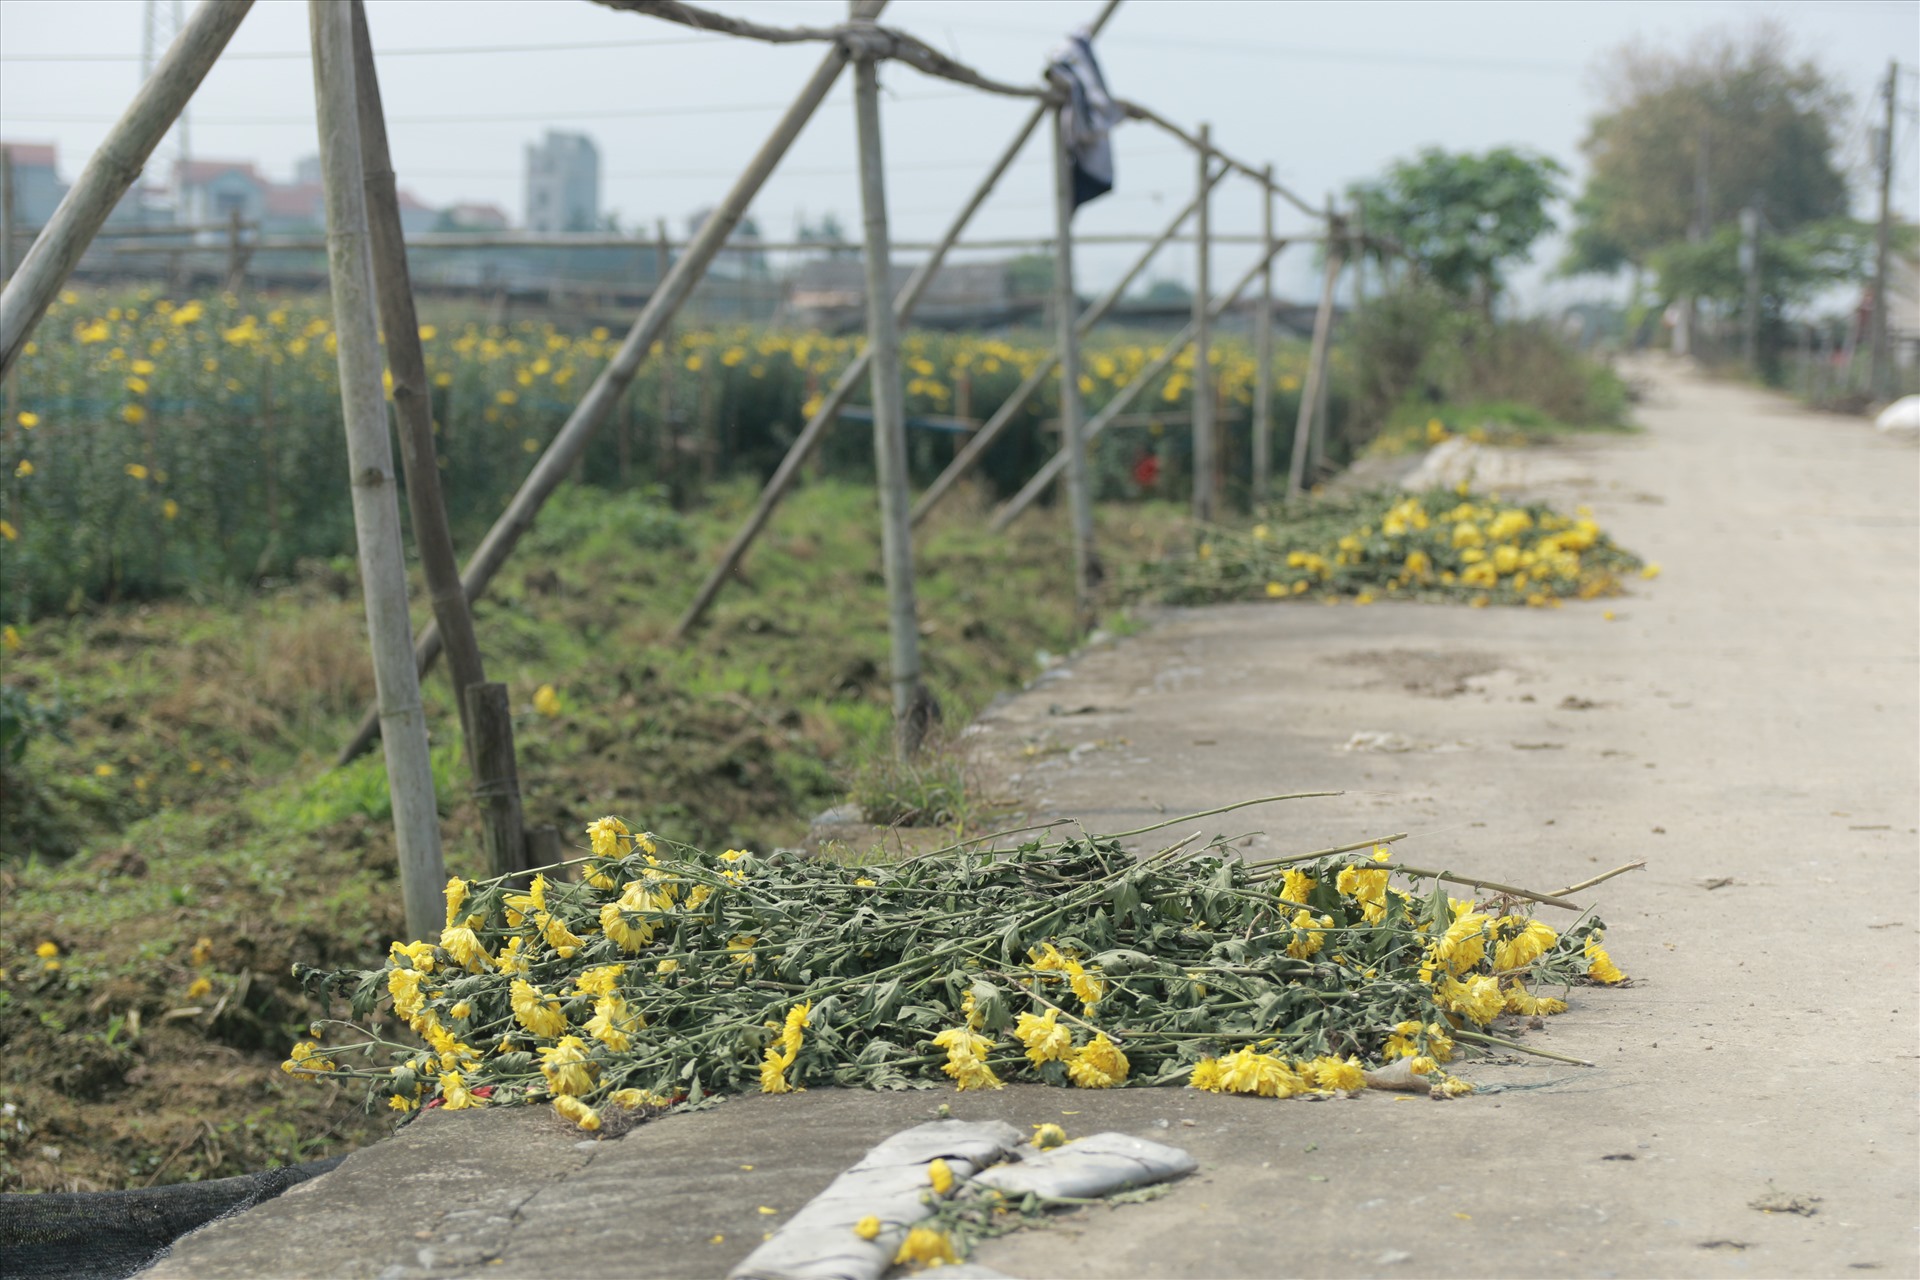 Sáng 15.4, theo ghi nhận của Lao Động tại các vườn hoa Tây Tựu (Bắc Từ Liêm, Hà Nội) hầu hết chủ vườn đều đang gặp khó trong việc tiêu thụ sản phẩm. Thậm chí, nhiều nhà vườn phải chặt bỏ vì hoa bán không ai mua.